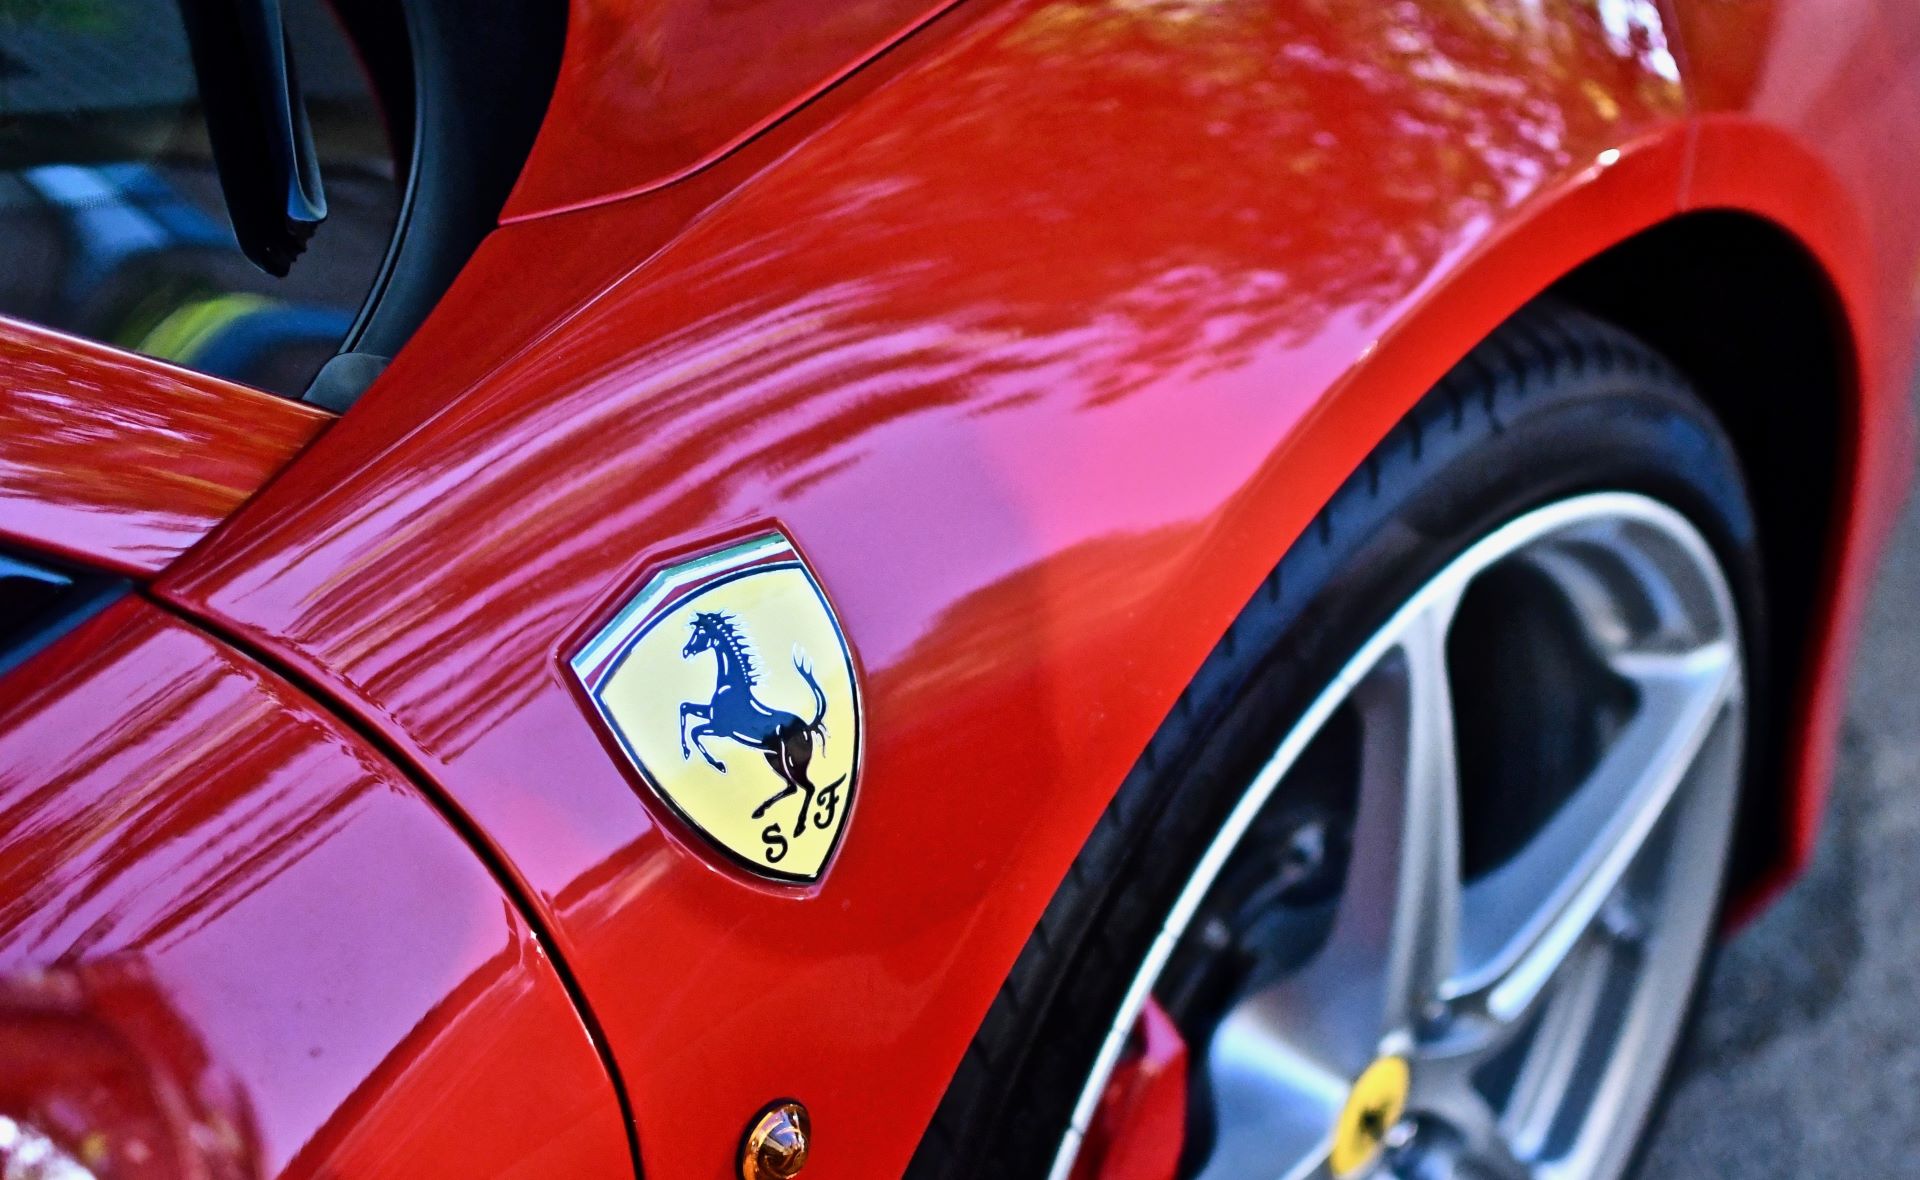 La Ferrari abbraccia l’energia pulita in più di un modo